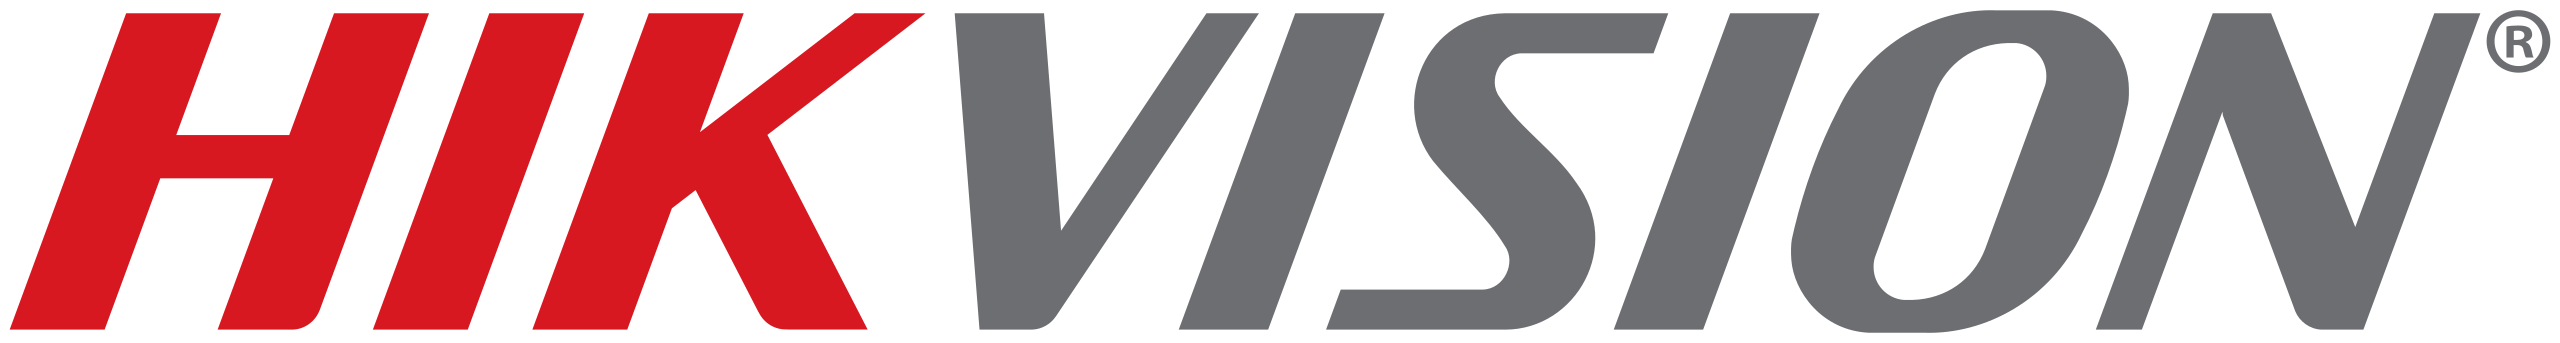 2560px Hikvision_logo.svg